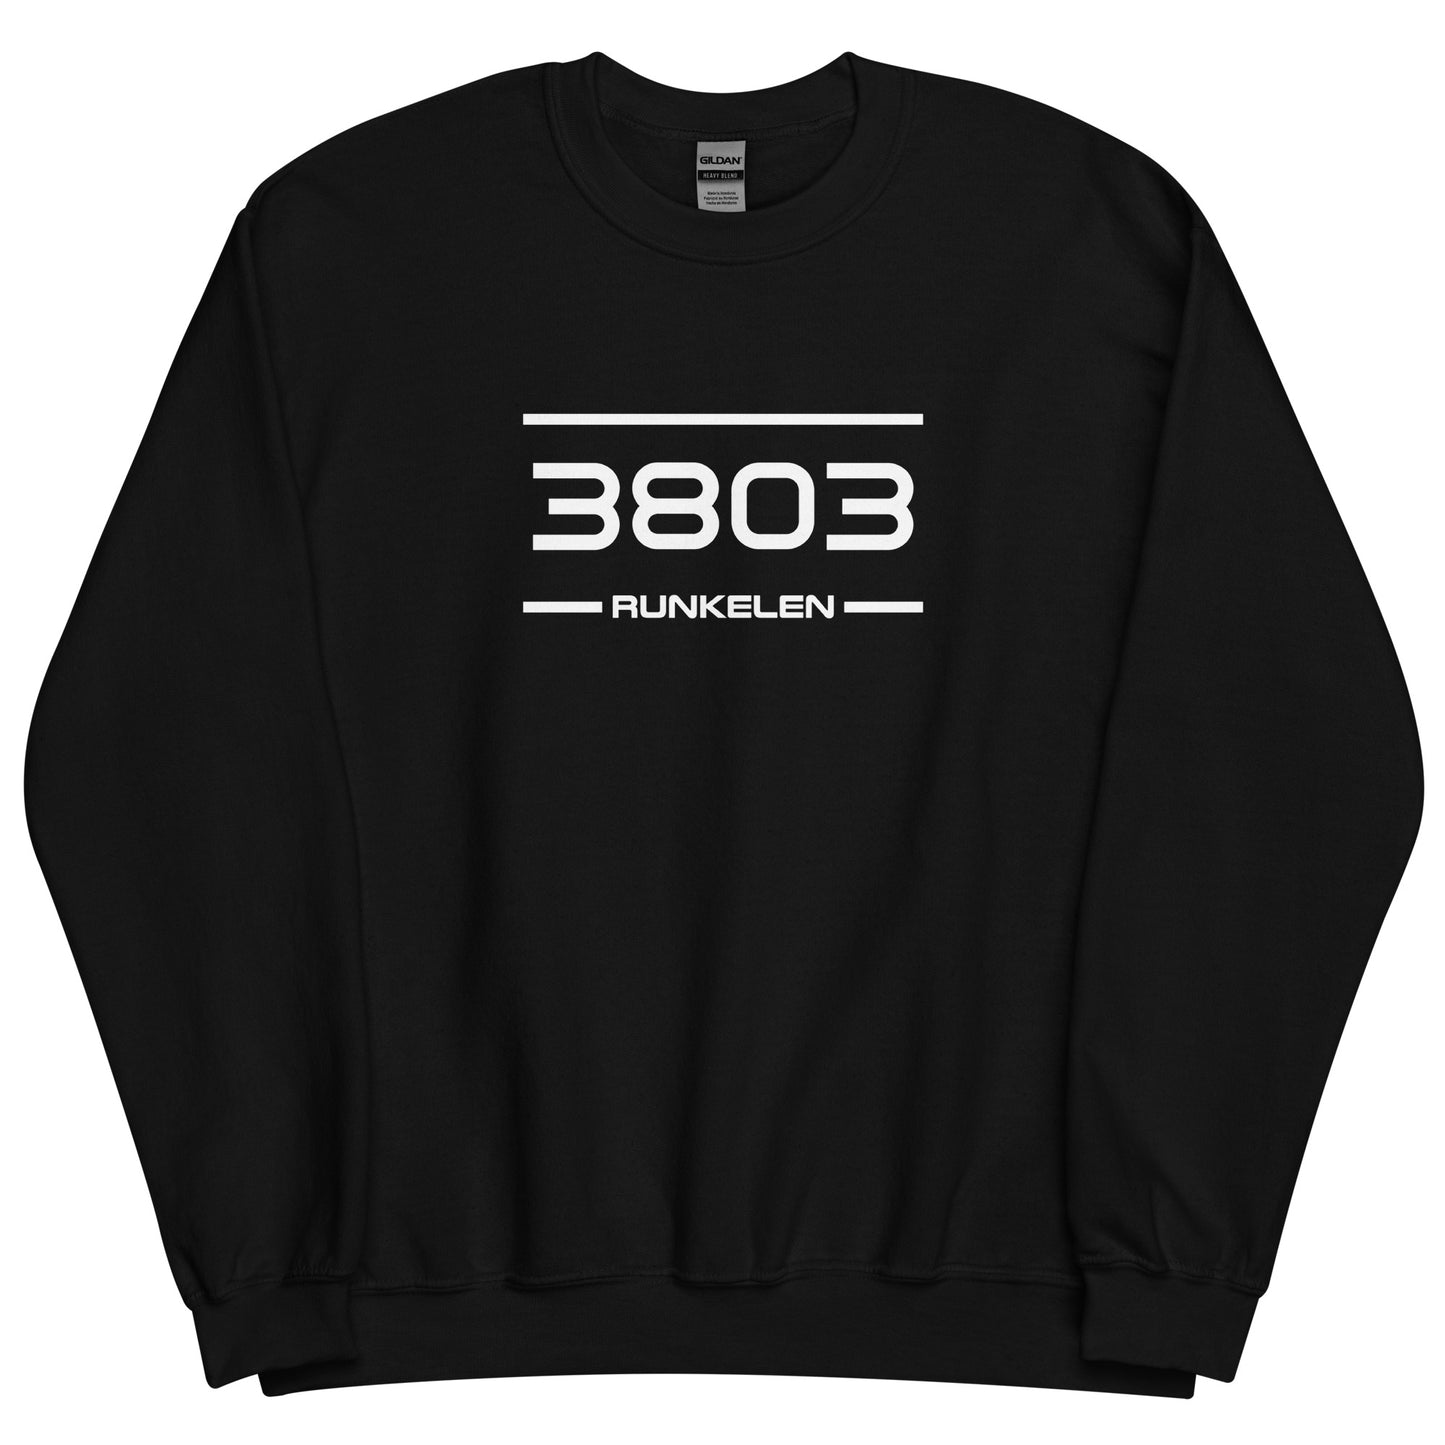 Sweater - 3803 - Runkelen (M/V)